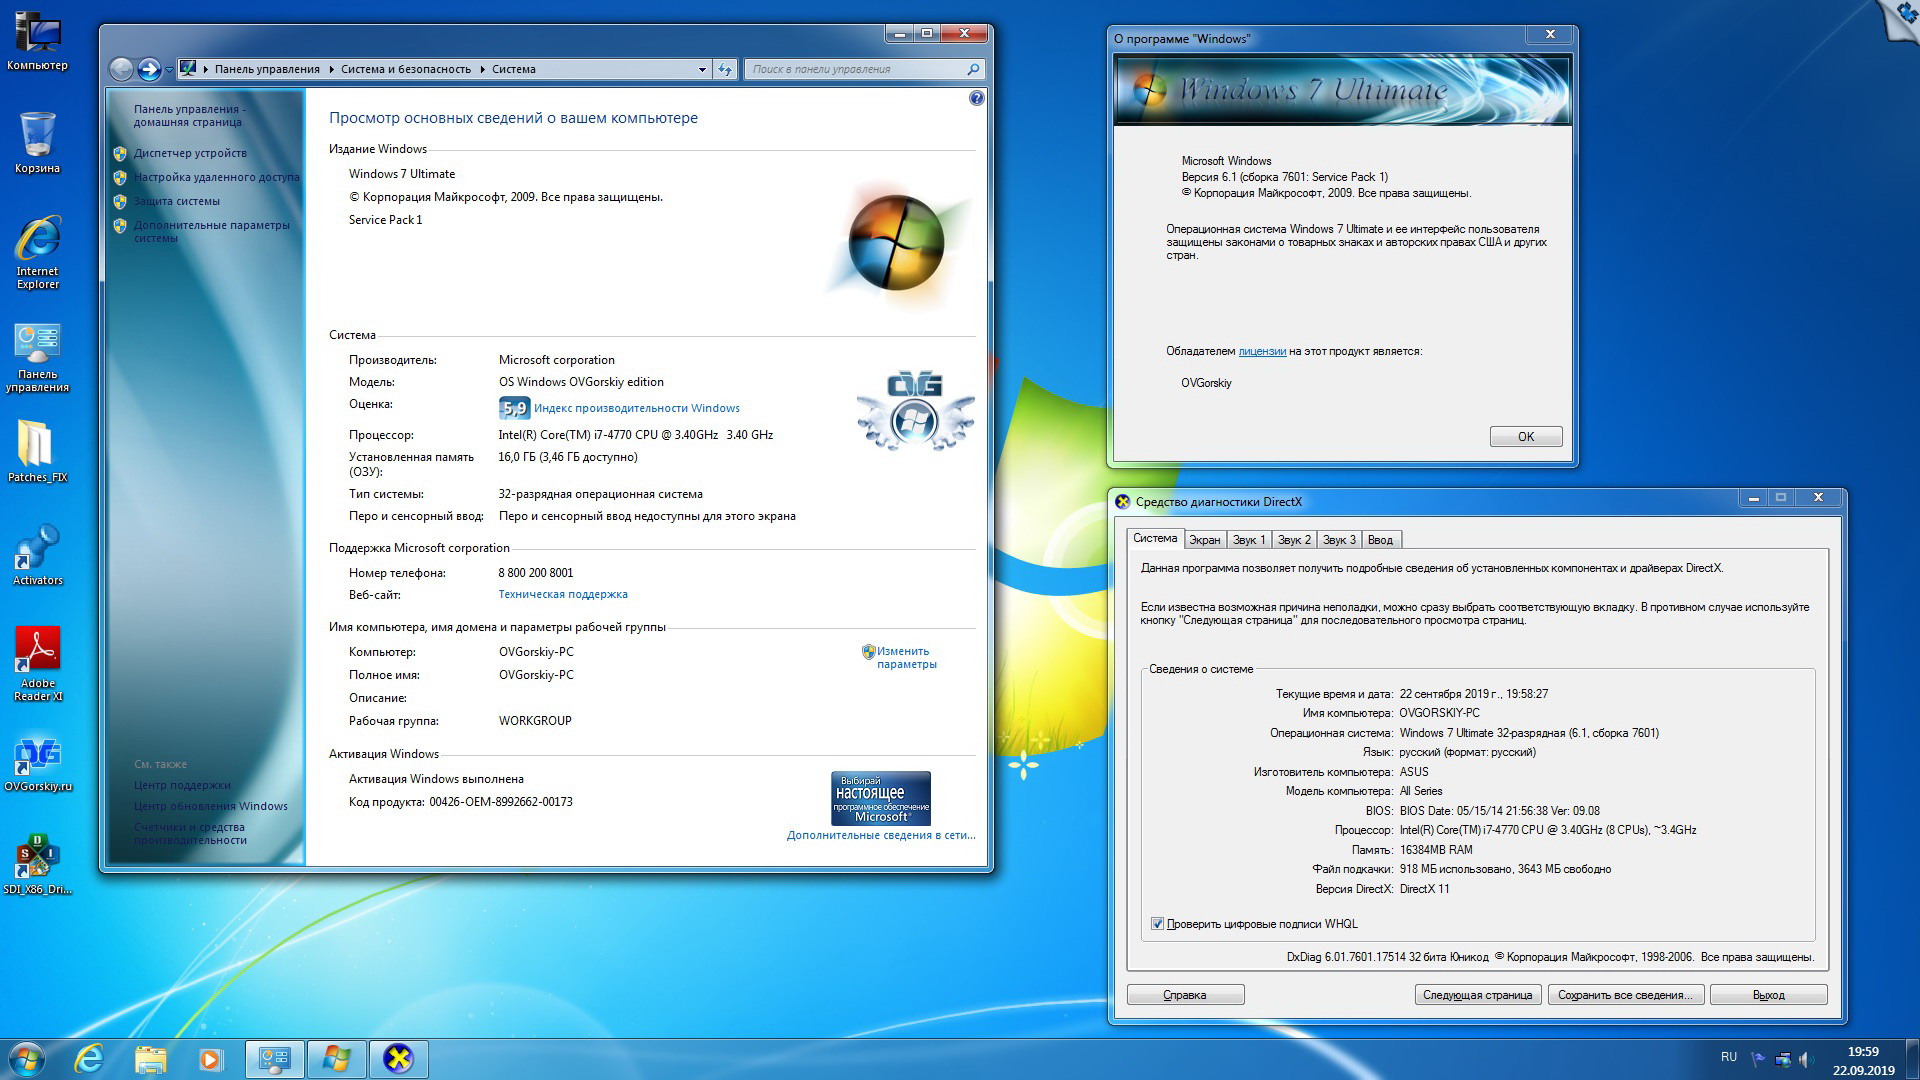 Тест windows 7. Установщик виндовс 7 максимальная 64. Windows 7 программное обеспечение. Windows 7 Ultimate. Операционная система Windows 7 максимальная.